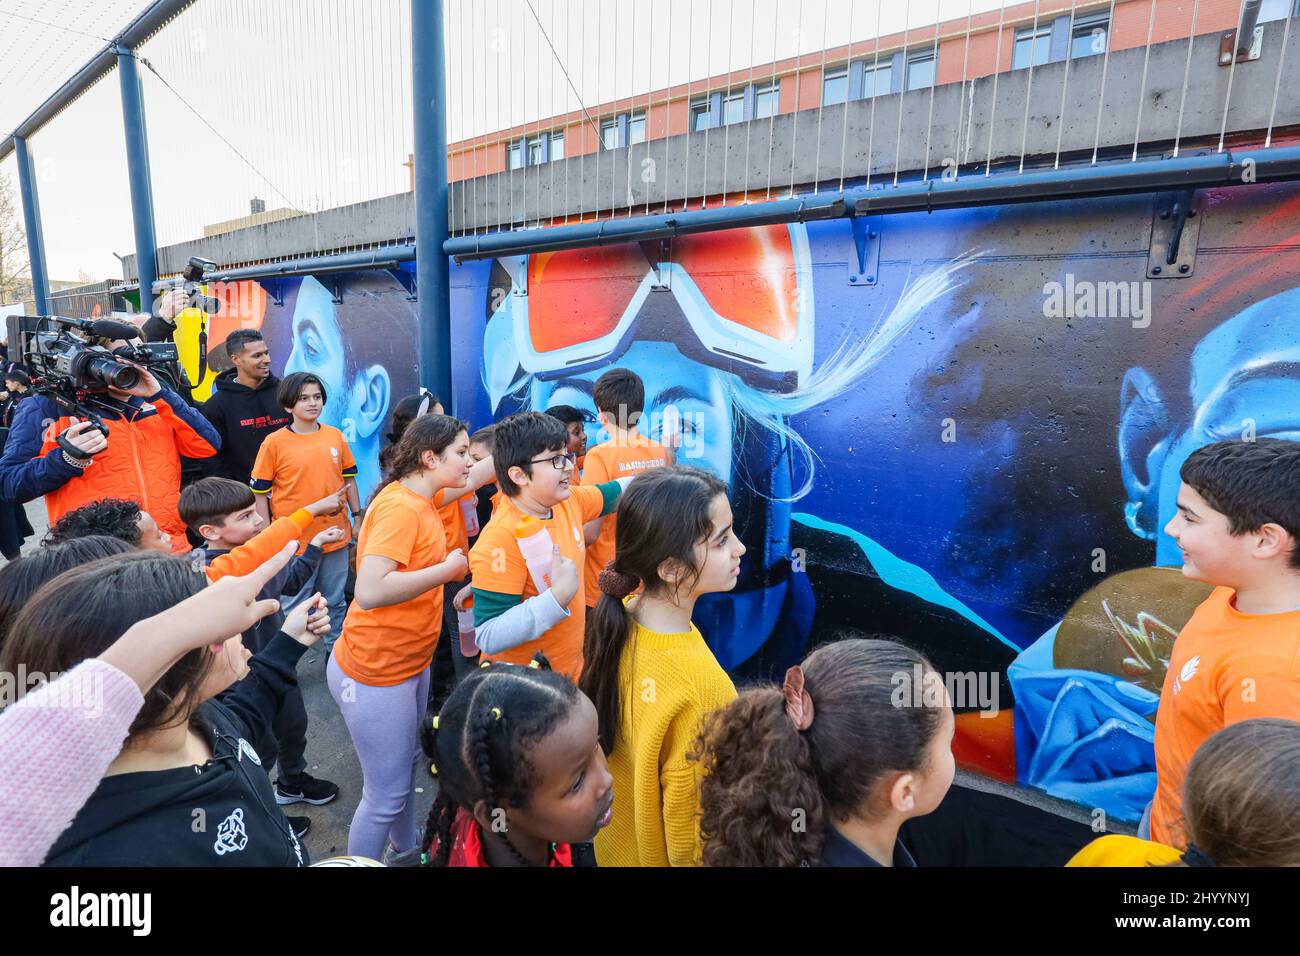 Sportkoepel NOC NSF en de gemeente Den Haag onthullen in de Haagse Schilderswijk een muurschildering met 10 Nederlandse sporthelden van de Olympische en Paralympische Spelen van Tokio en Beijing. Hiermee willen ze jongeren inspireren het beste uit zichzelf te halen. Den Haag is in 2022 sporthoofdstad van Europa. Ook is er een programma voor kinderen, waaronder clinics met TeamNL-sporters. Stock Photo